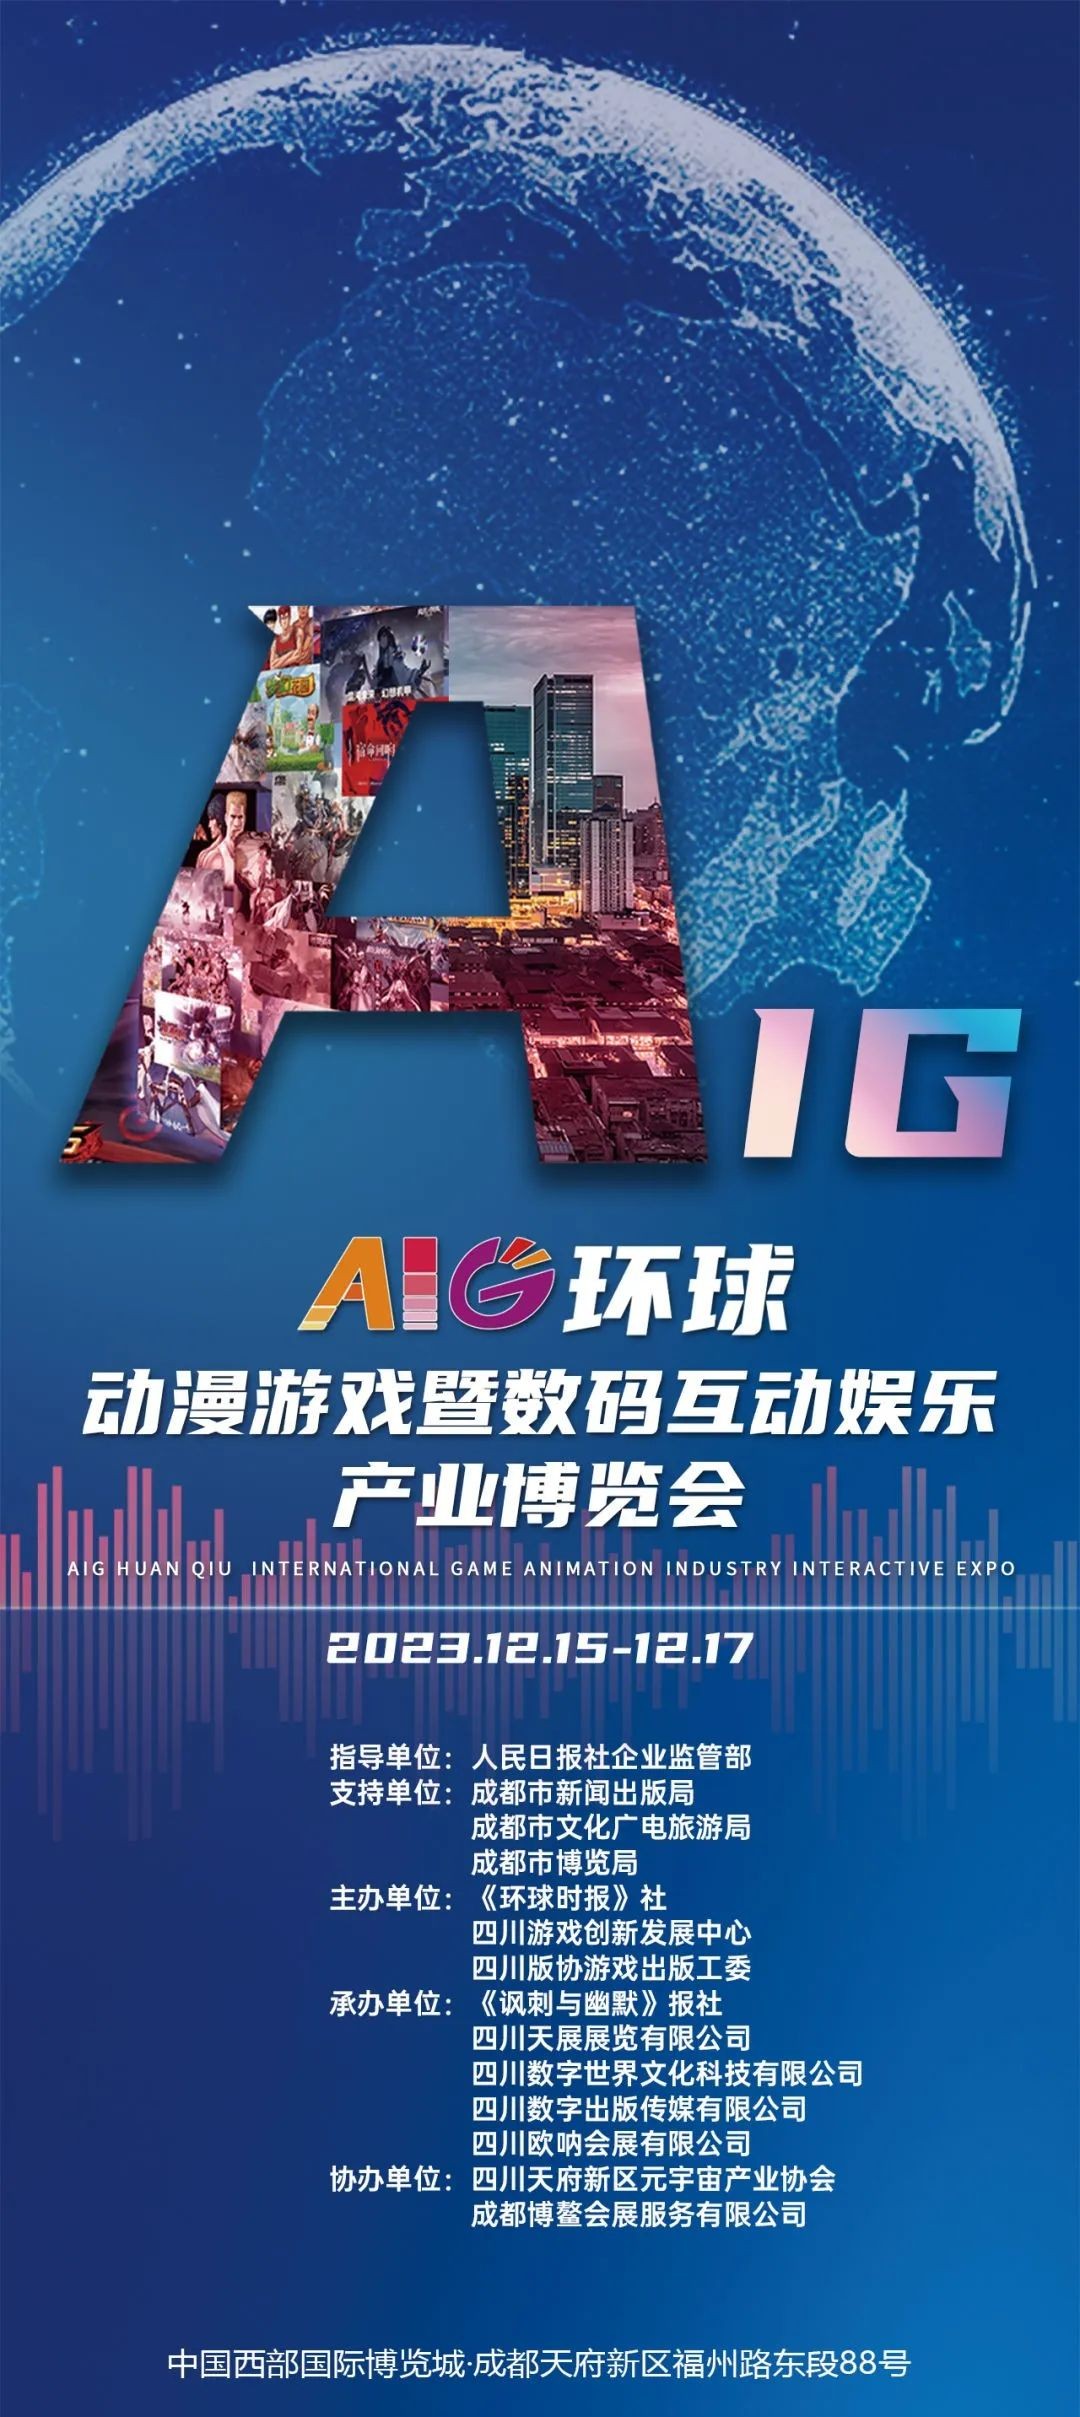 AIG环球动漫游戏暨数码互动娱乐产业博览会